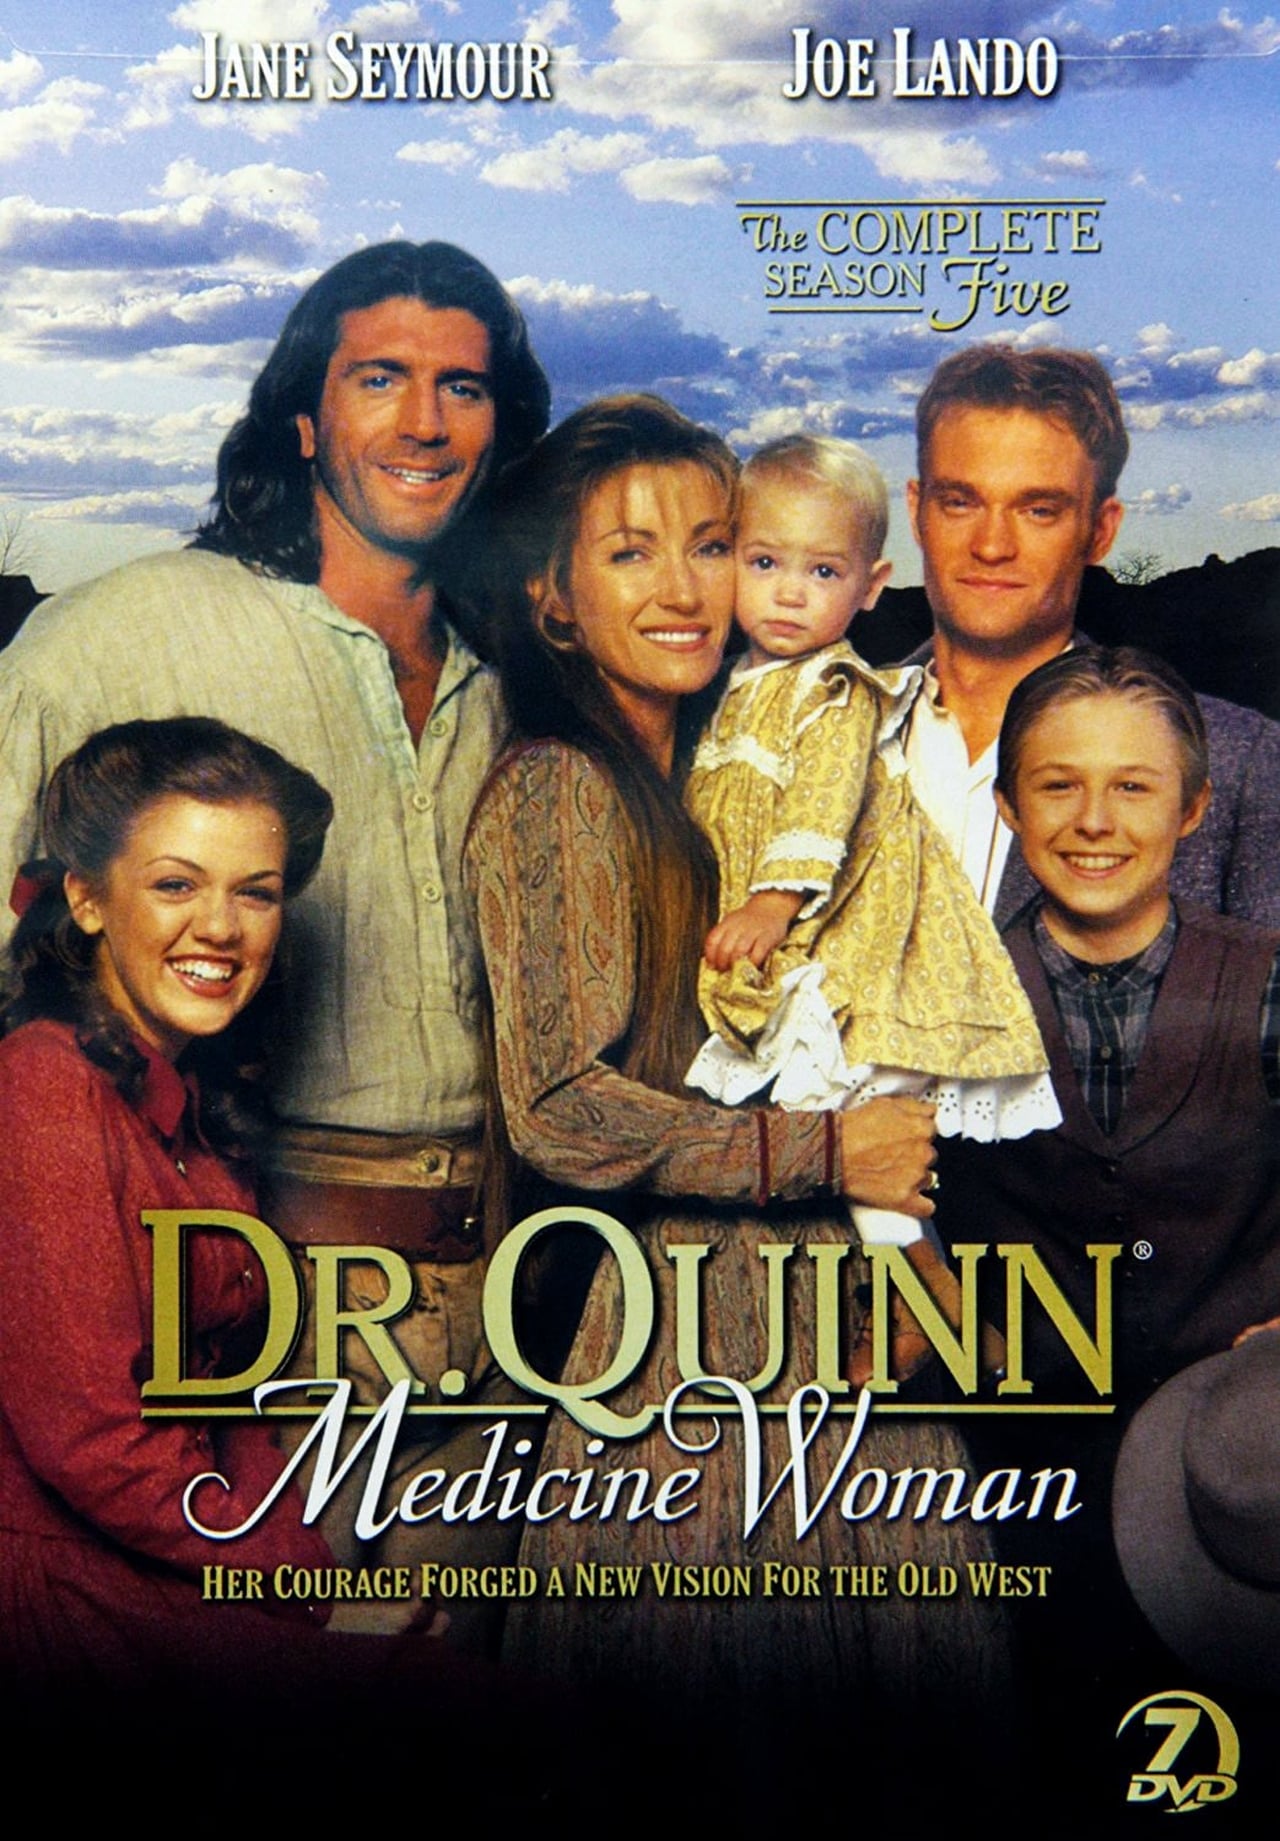 Dr. Quinn, Medicine Woman Season 5